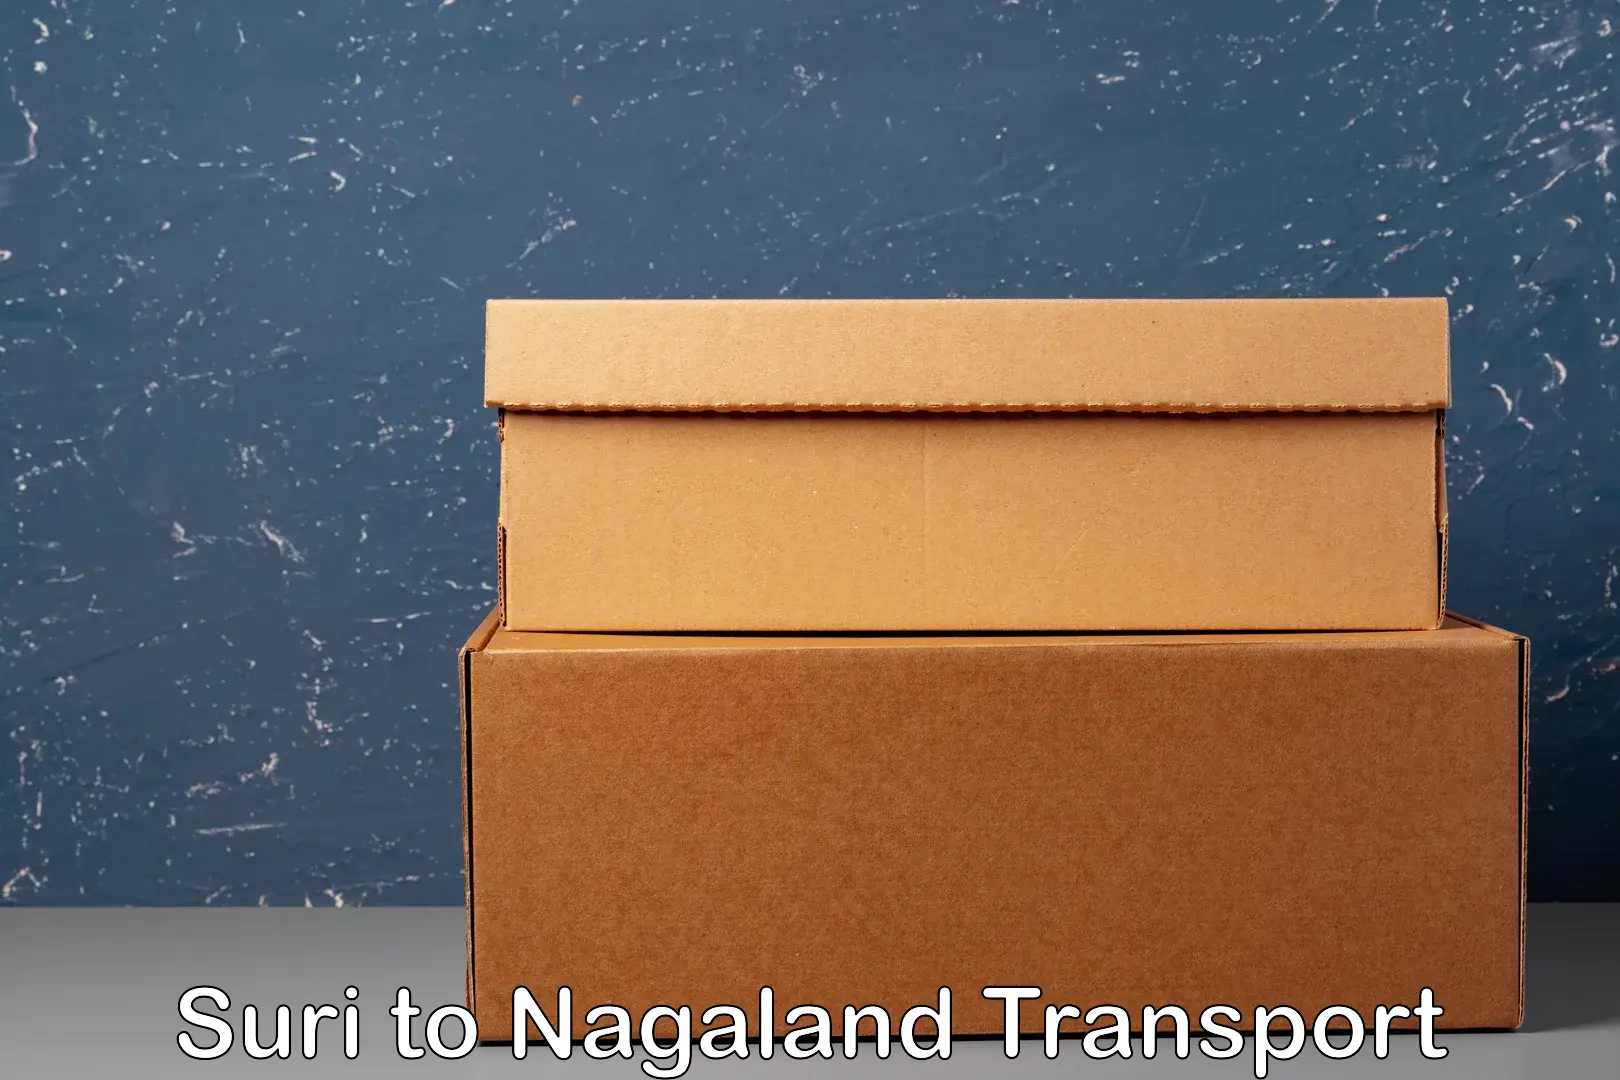 Vehicle parcel service Suri to Dimapur